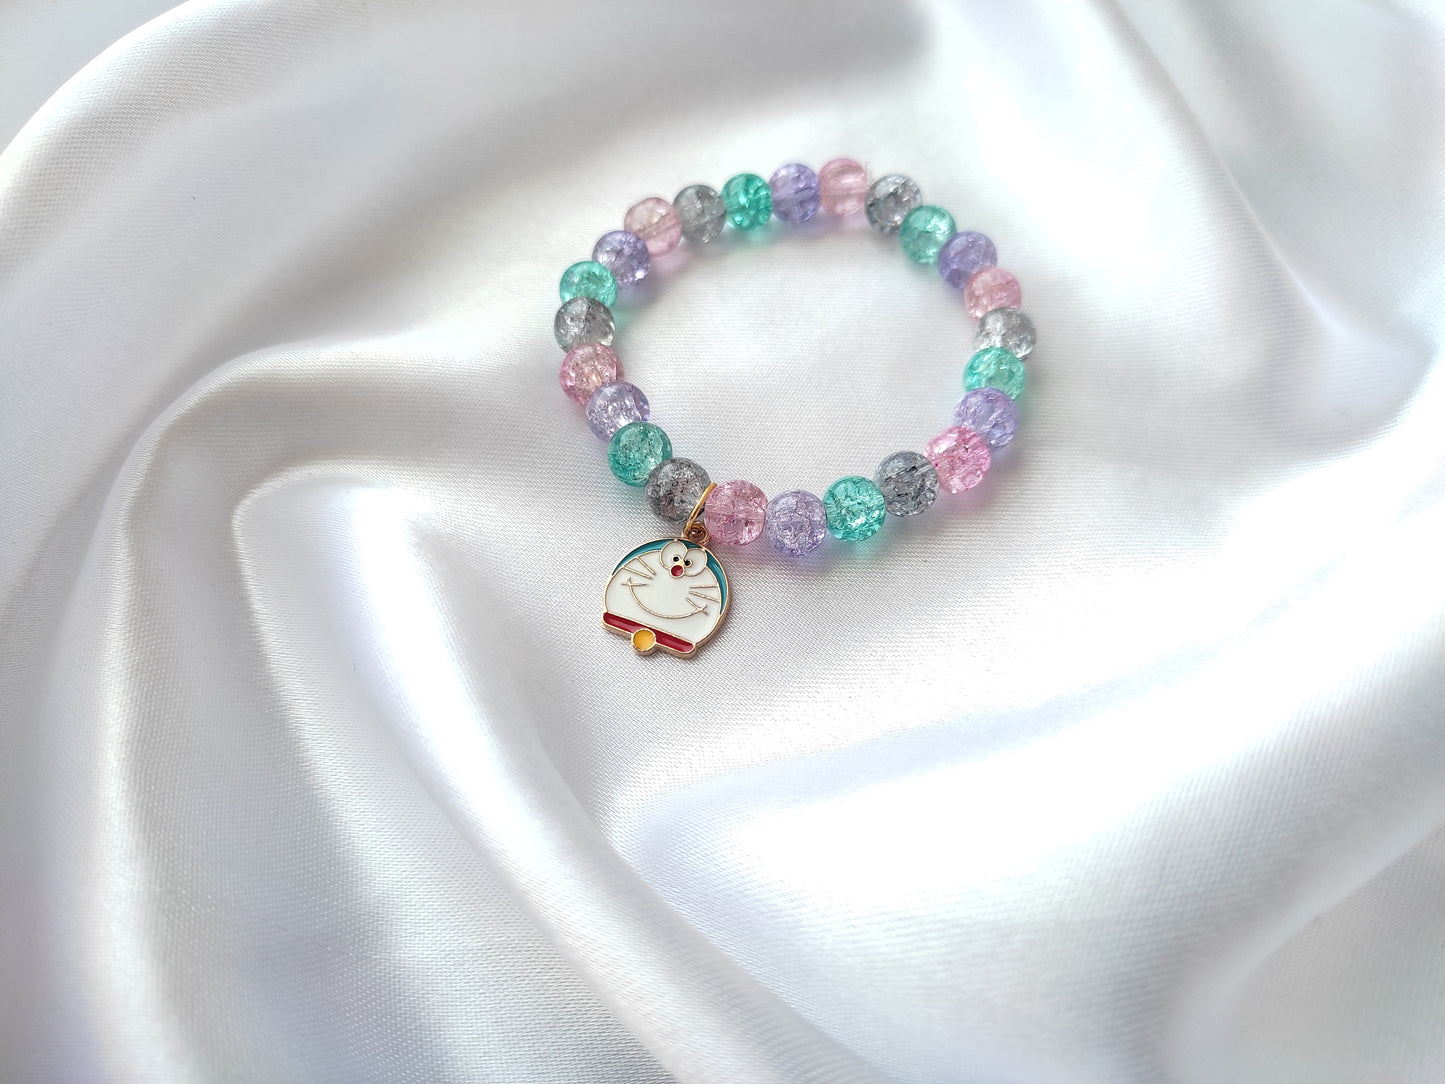 Cute doremon multi-colour beads bracelet for women and girls